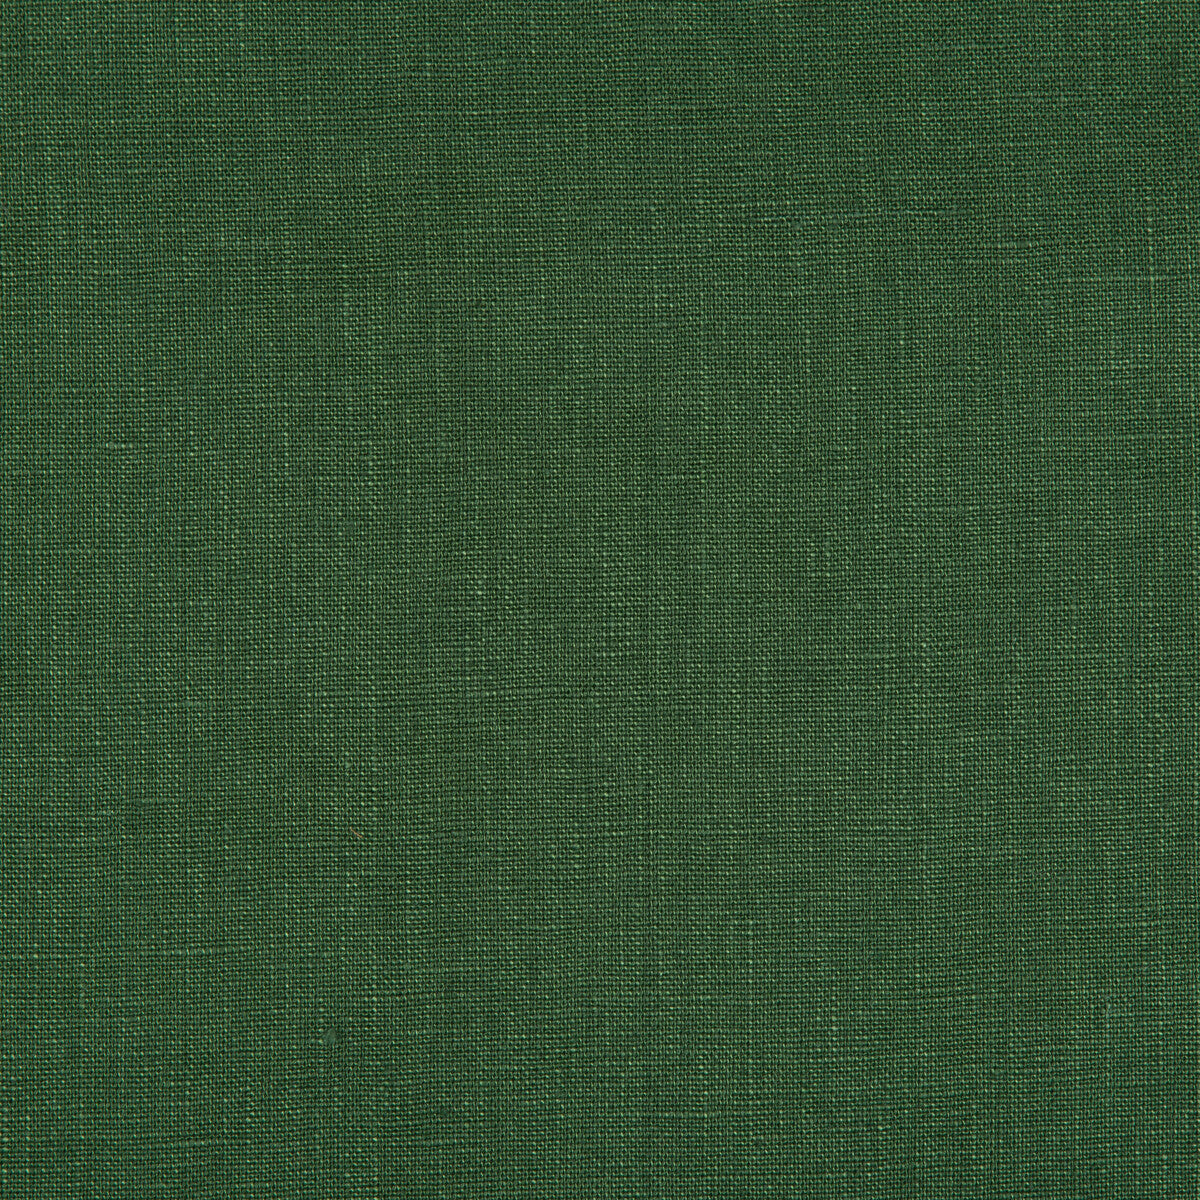 Kravet Basics fabric in 24570-3 color - pattern LA1000.3.0 - by Kravet Basics